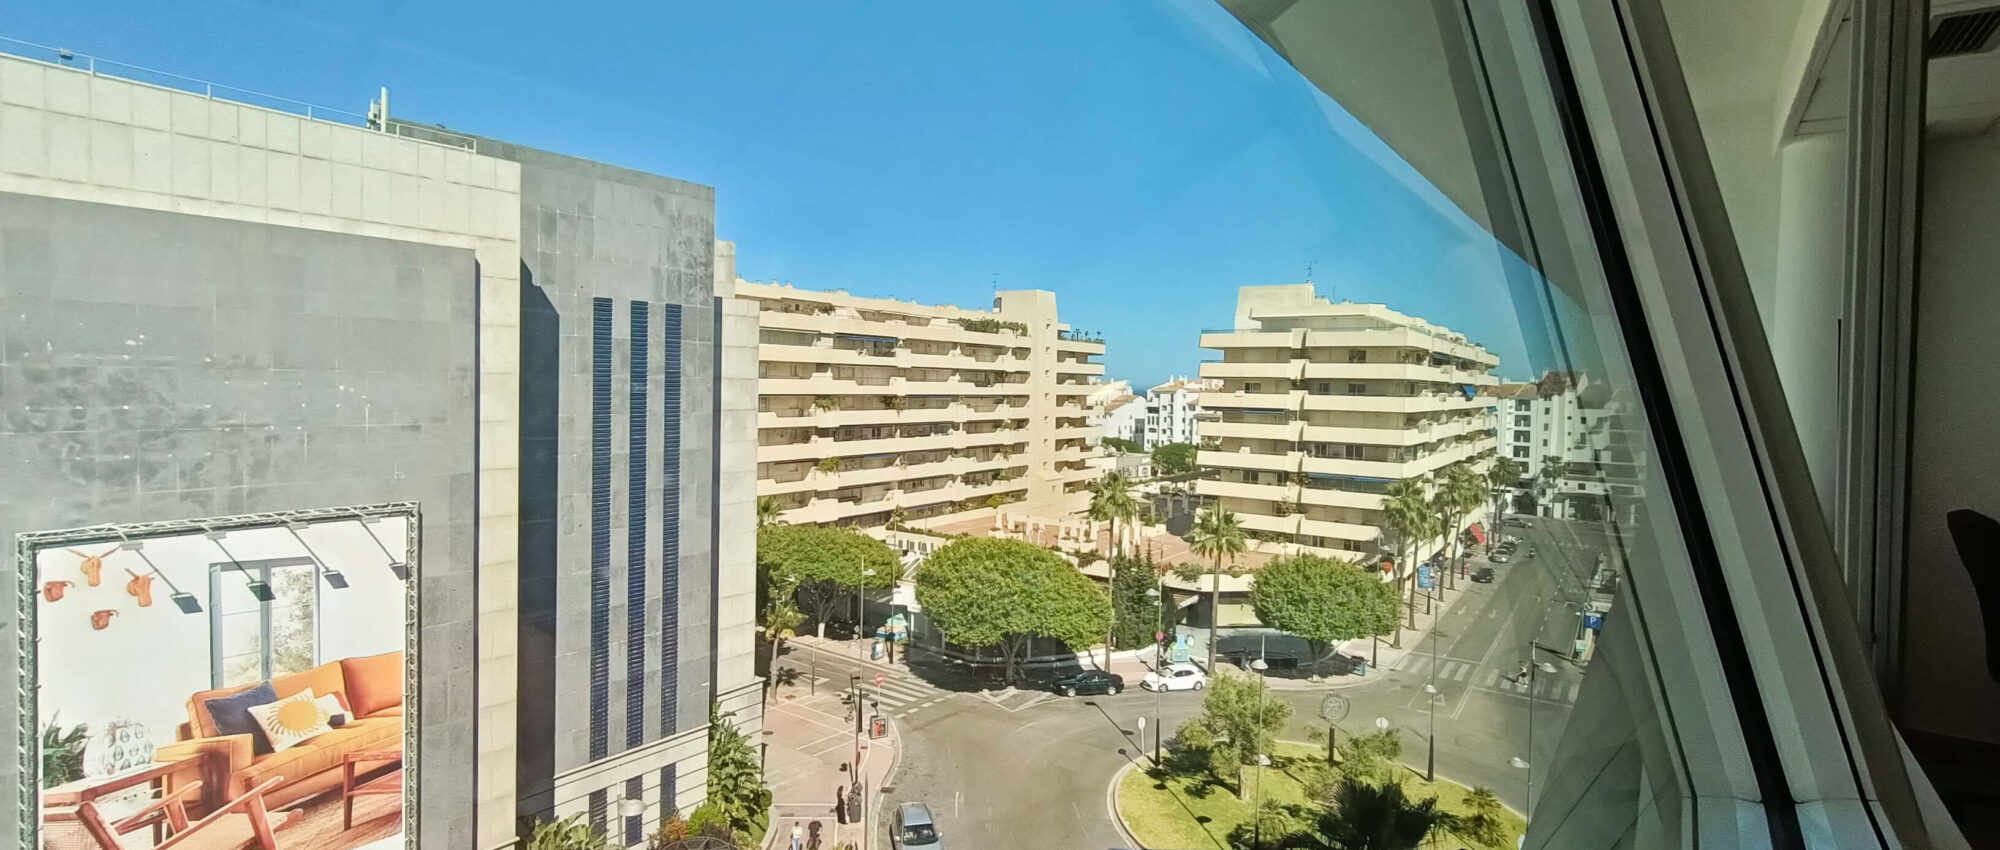 Oficina en ubicación privilegiada Puerto Banús, Marbella